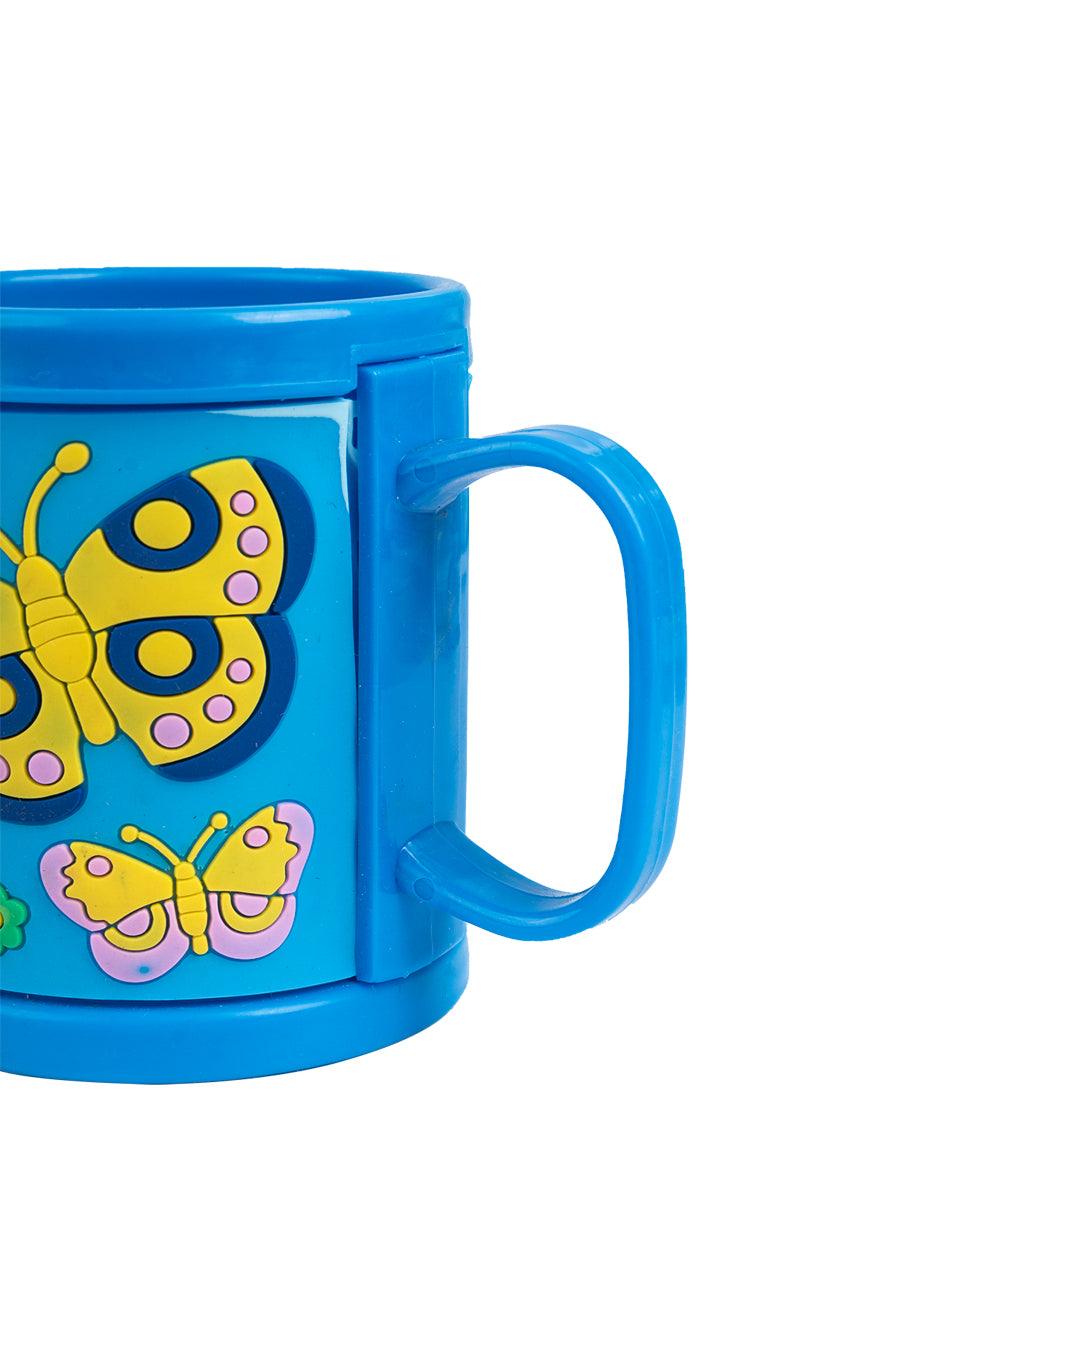 Butterfly Mug for Kids, Blue, Plastic, 280 mL - MARKET 99